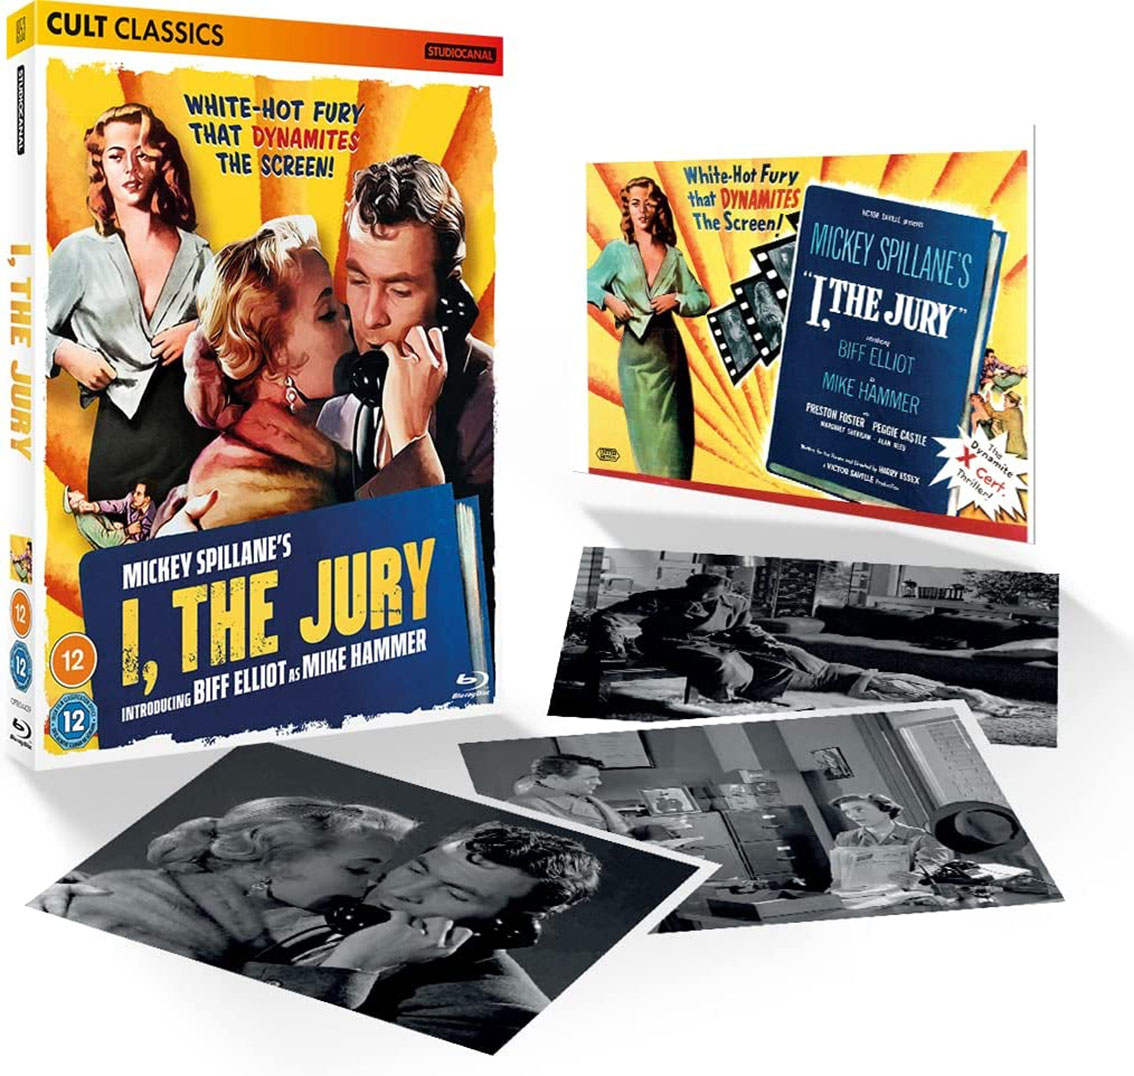  the Jury Blu-ray pack shot